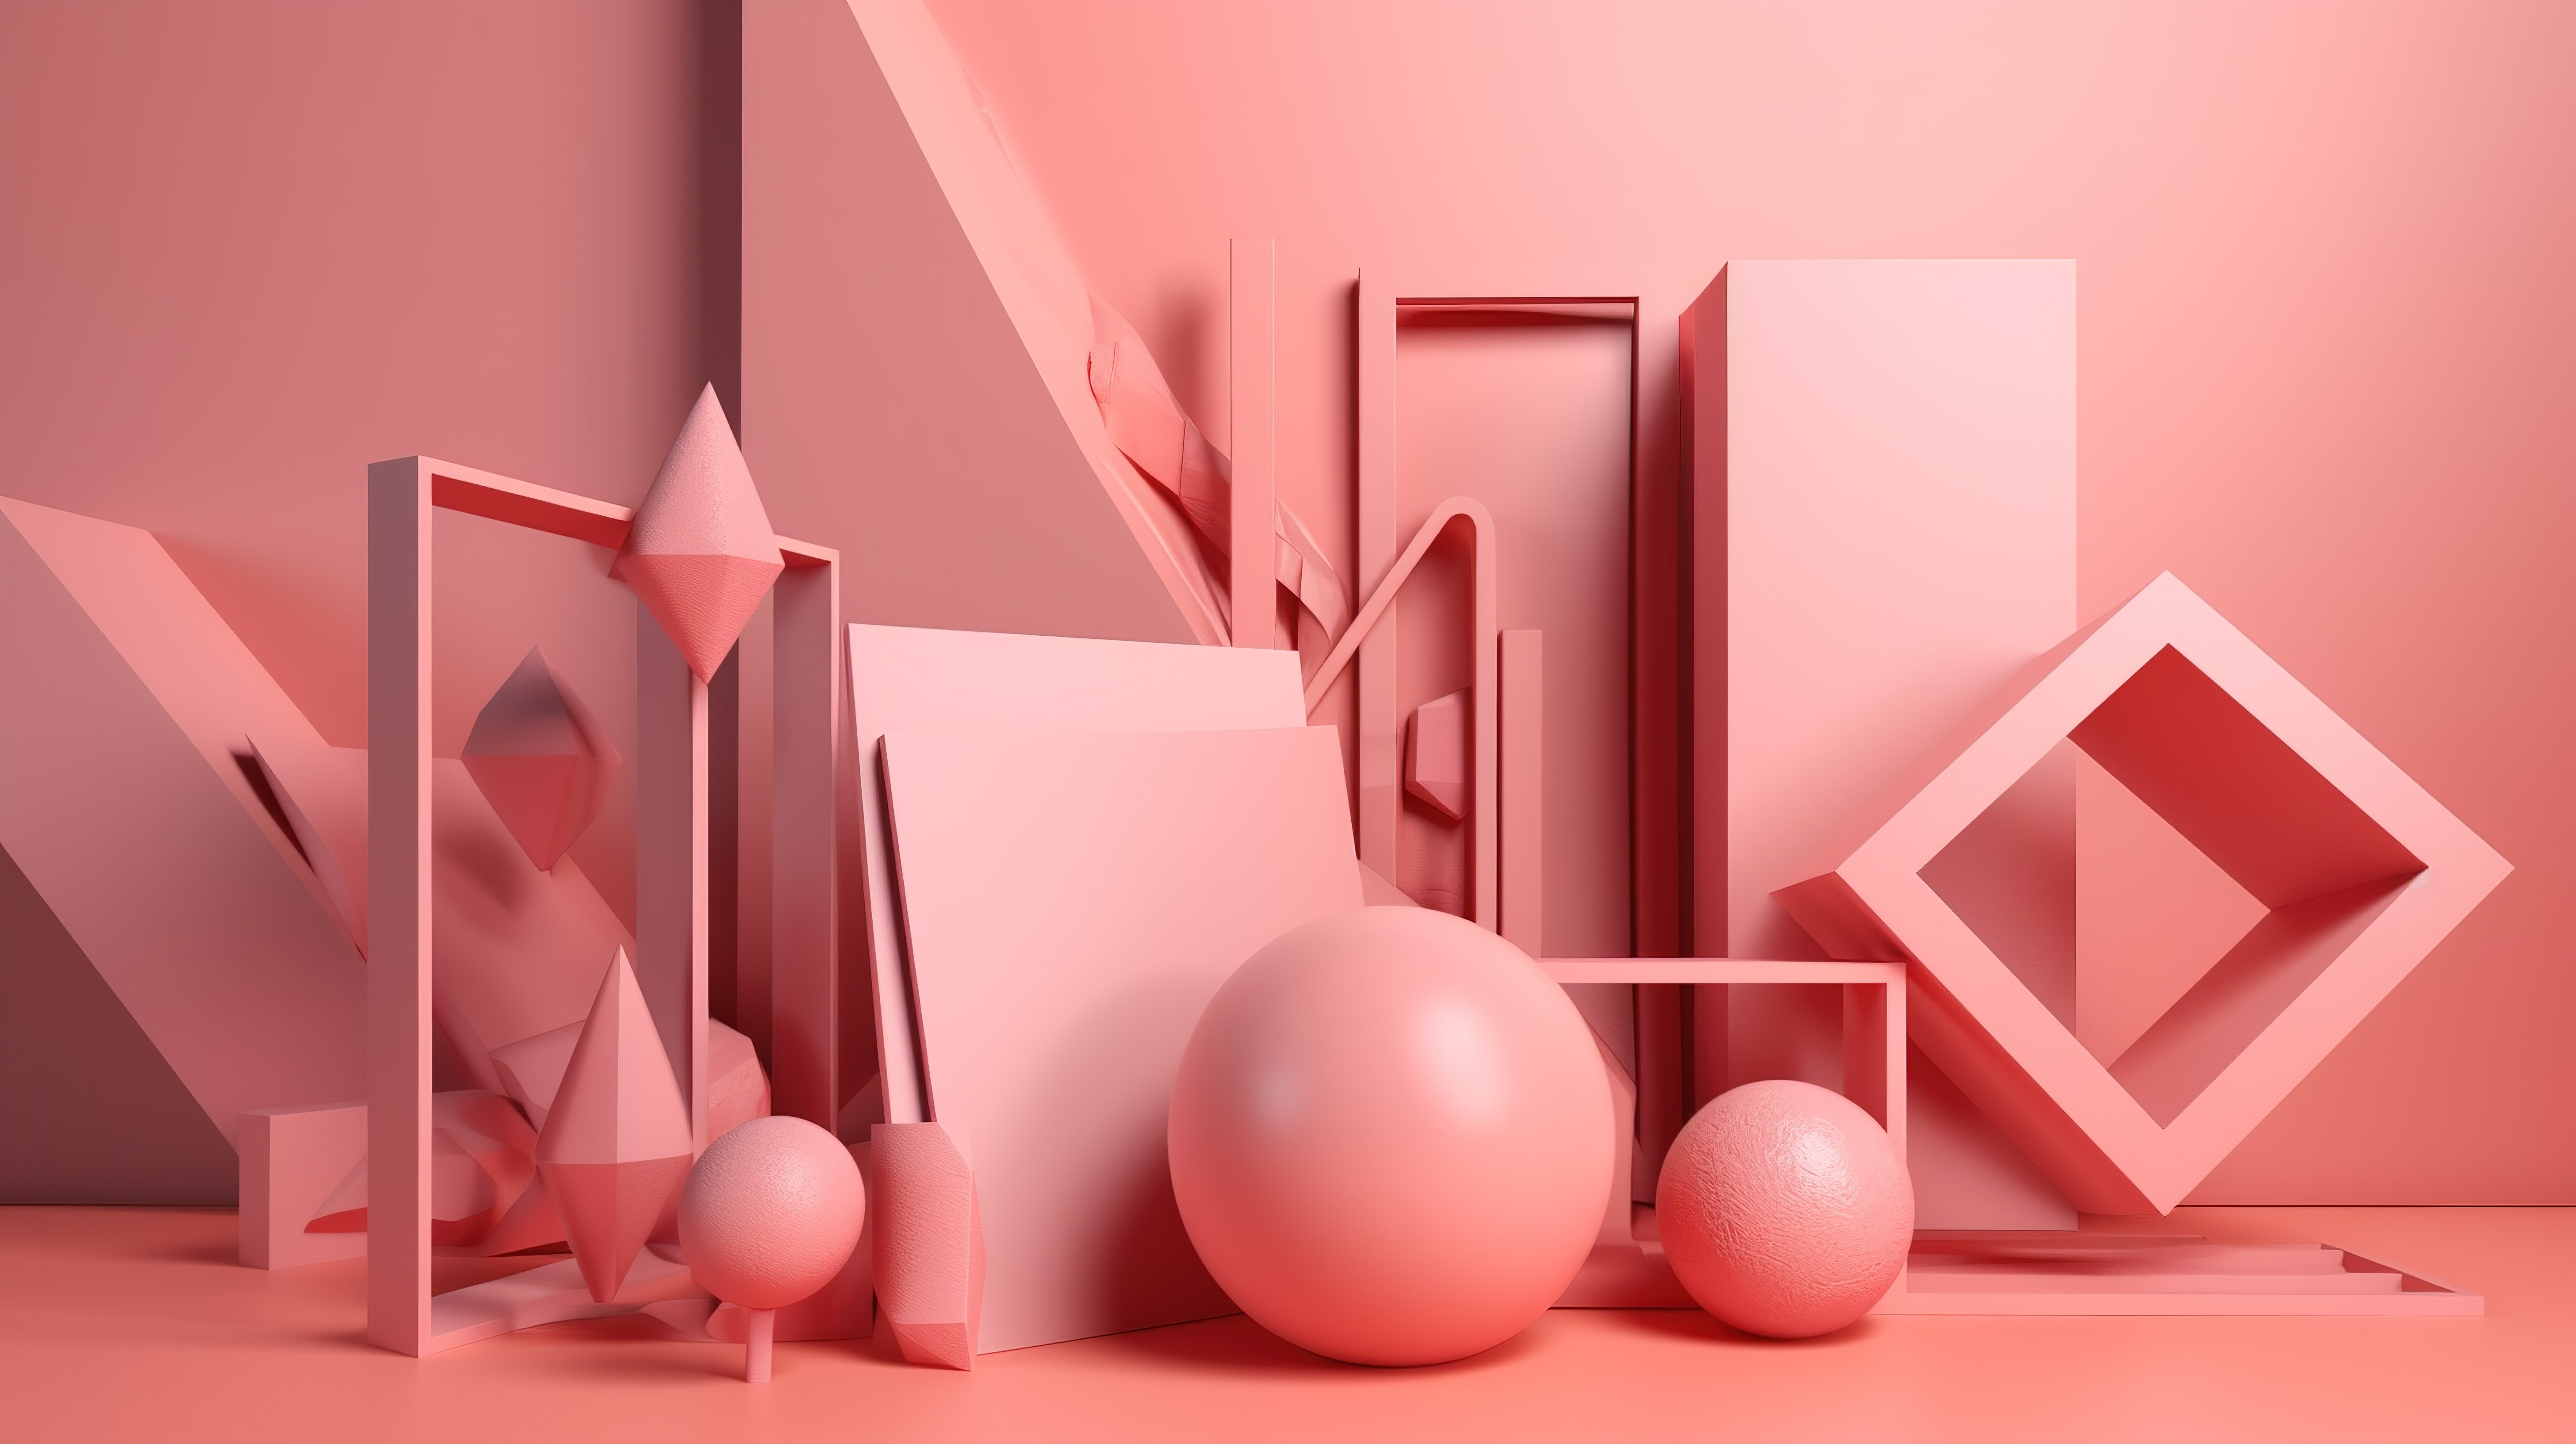 粉红色背景突出了引人注目的抽象 3D 几何形状图片